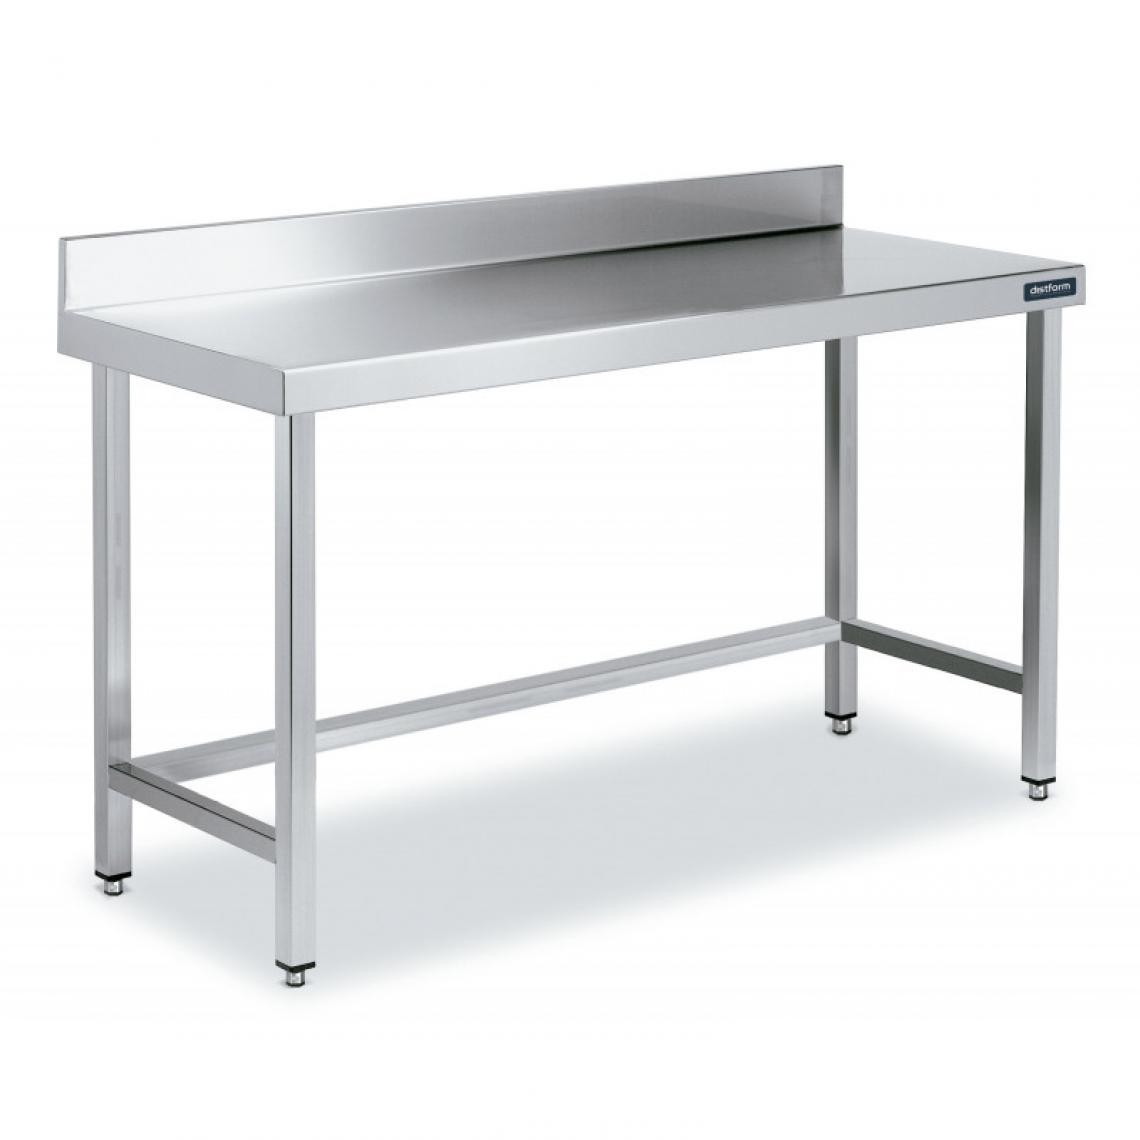 DISTFORM - Table Inox de Travail avec Dosseret Gamme 900 - Distform - Acier inoxydable900x900 - Tables à manger